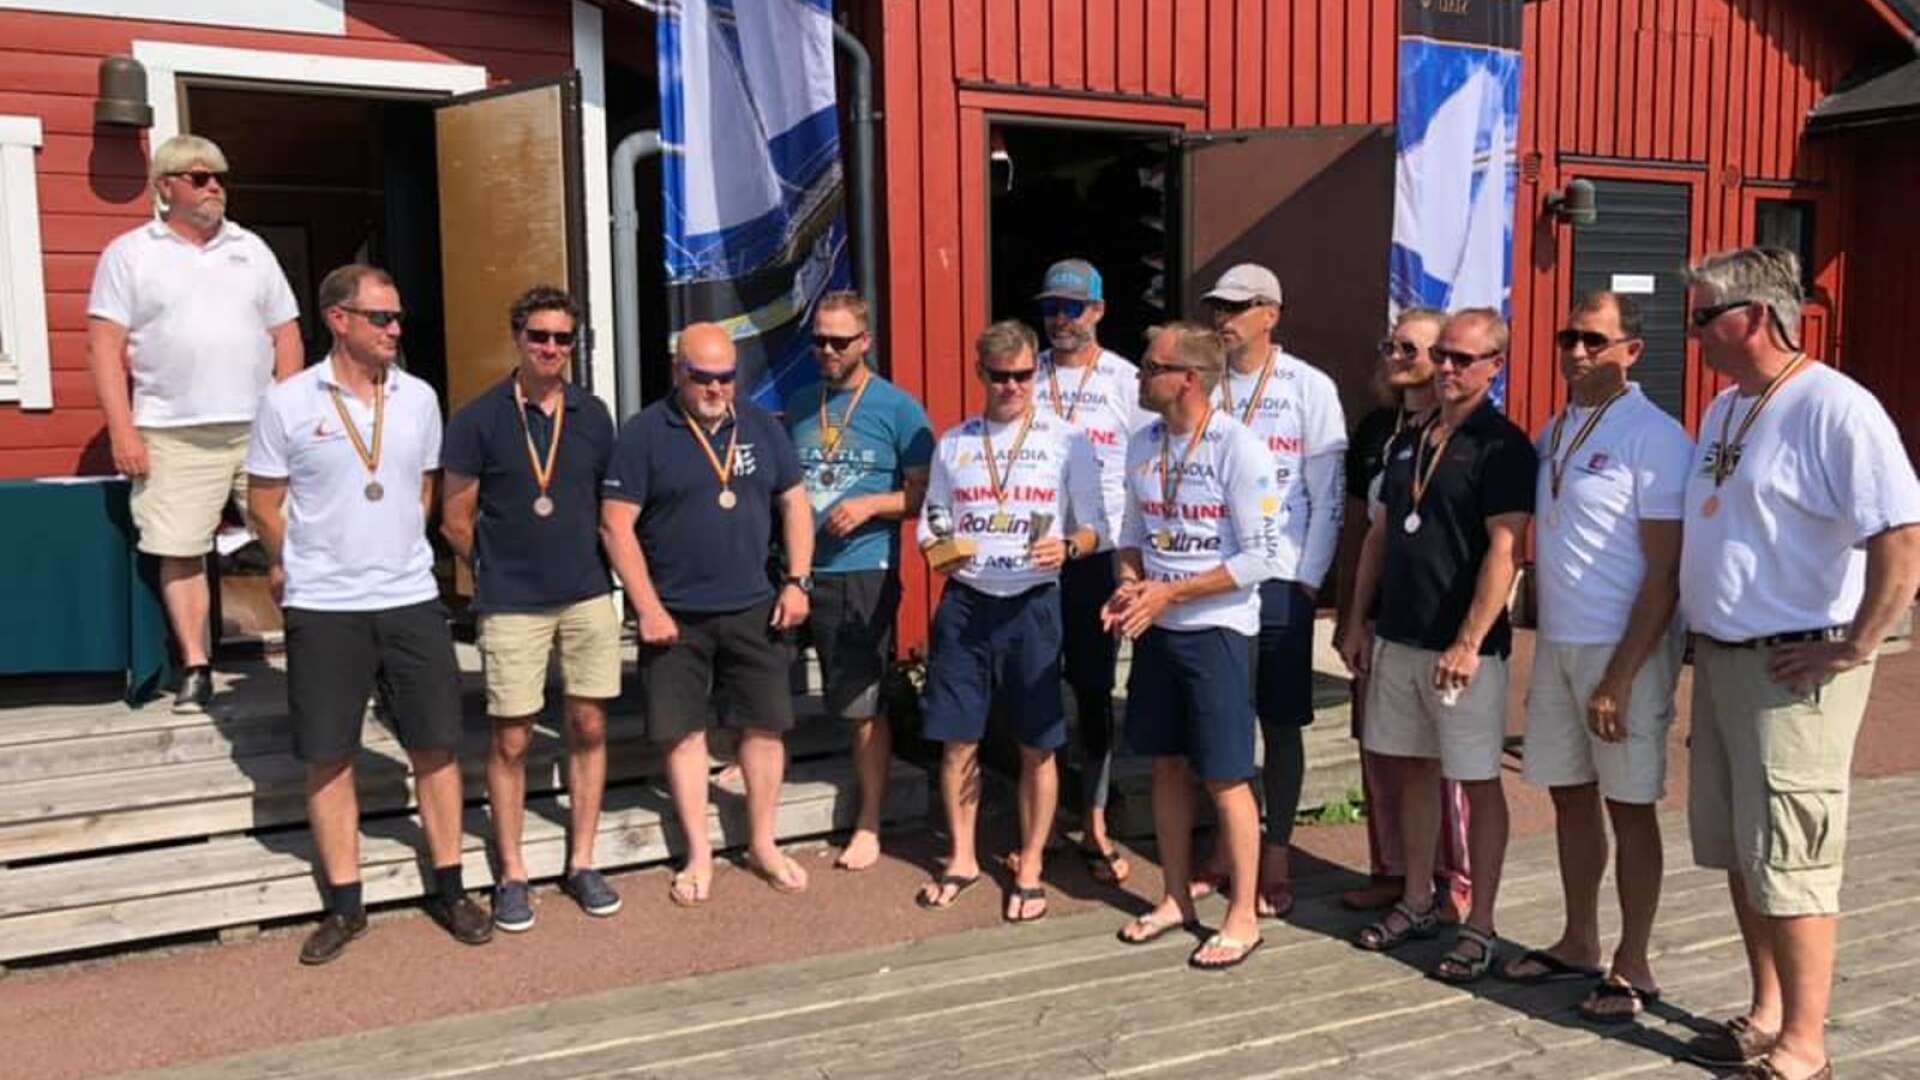 Spruce Sailing Team, med Åmålsbesättningen Thomas Skålén, Fredrik Pettersson, Johan Haglöf och Henrik Pettersson slutade på tredje plats.